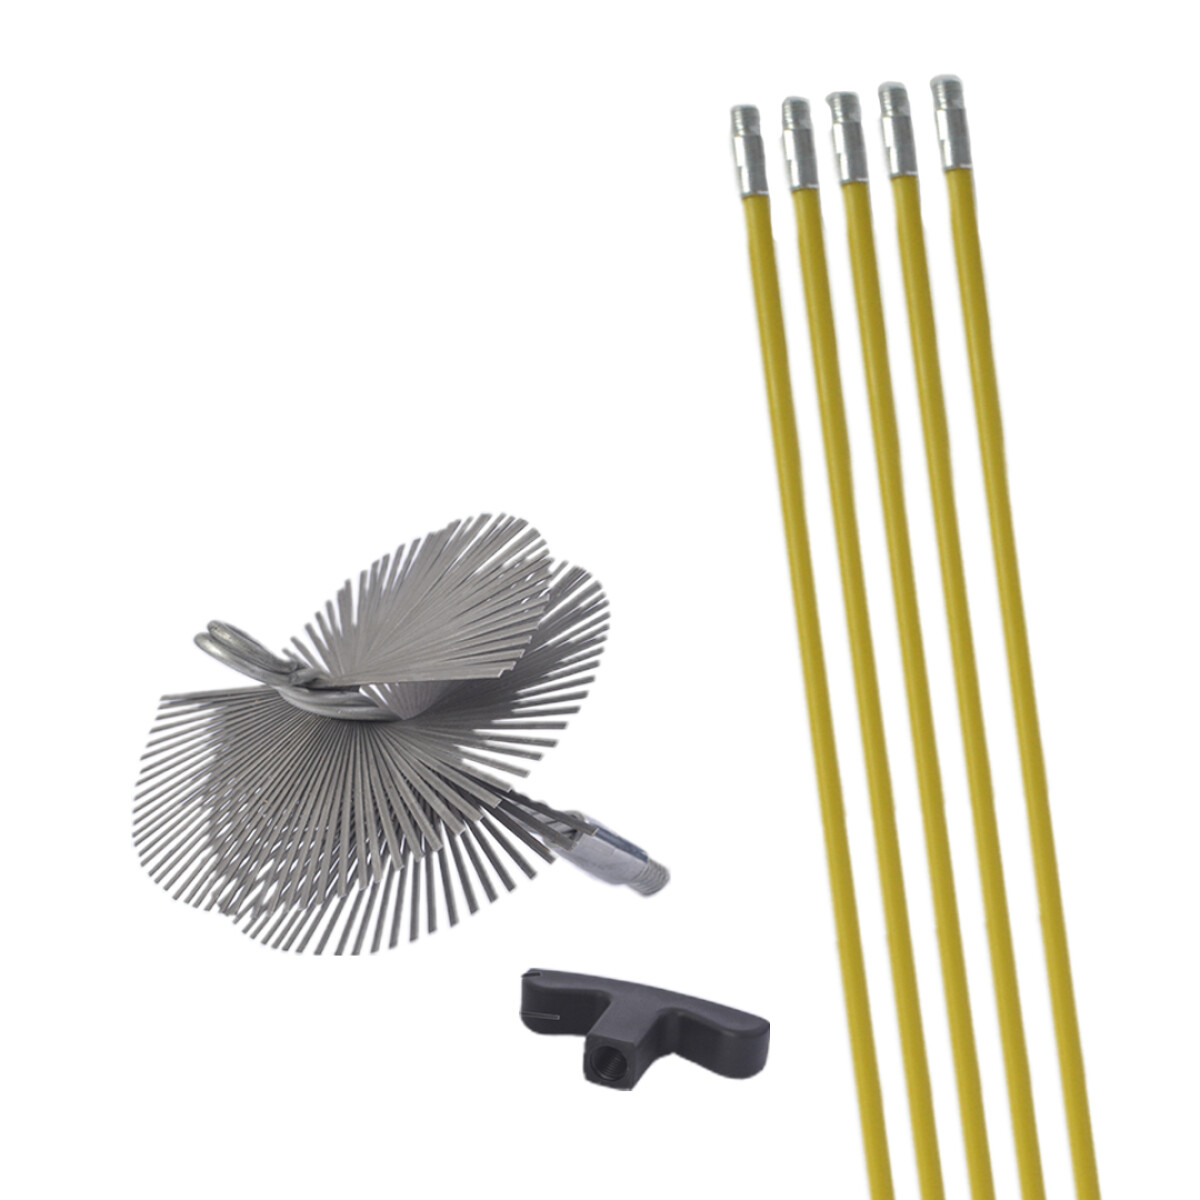 Kit cepillo deshollinador 150 mm - Metal 